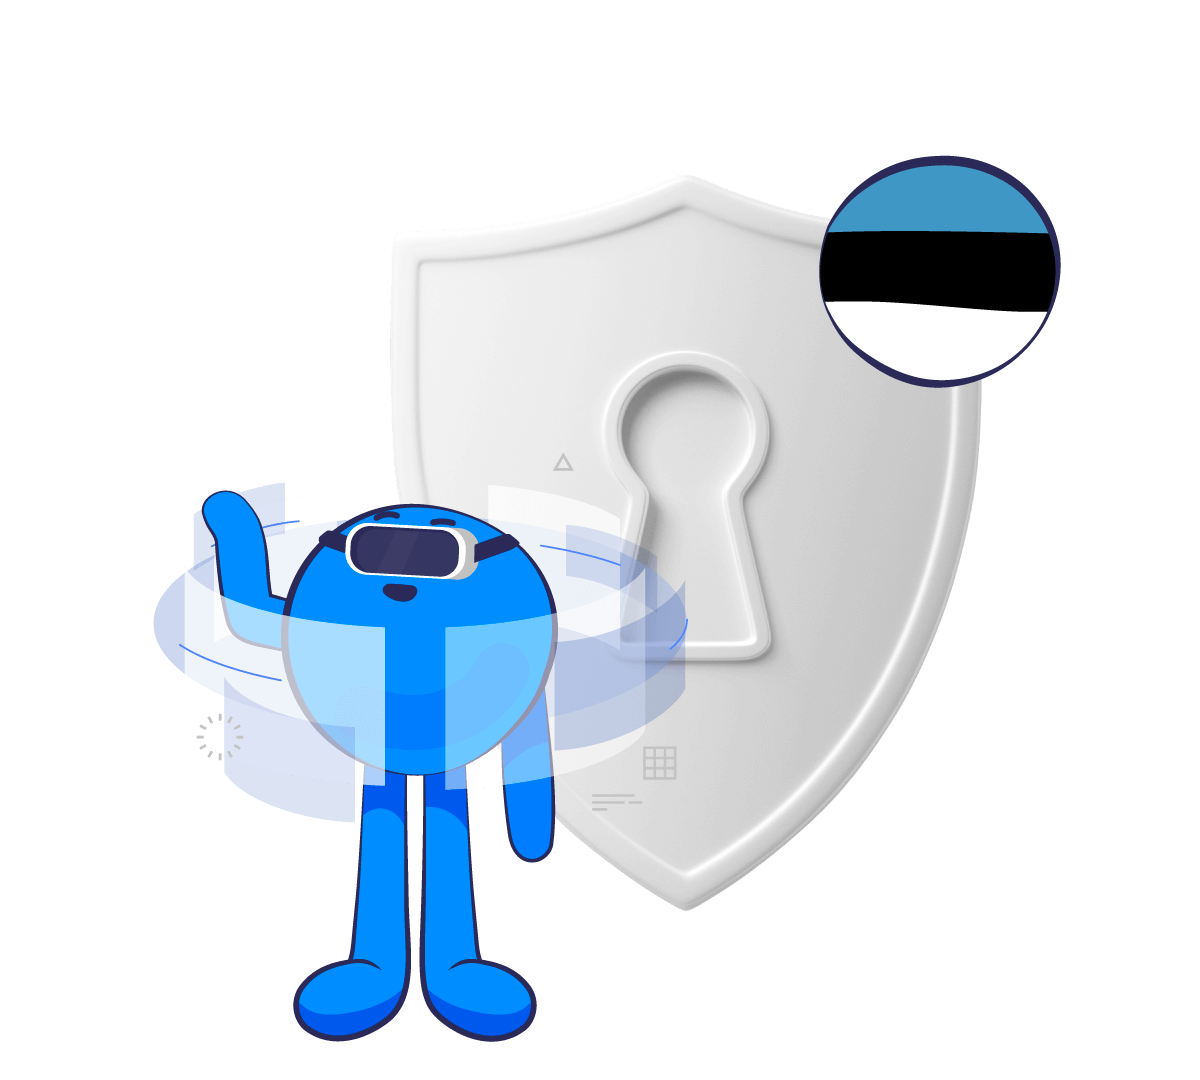 The future is private with Estonia VPN